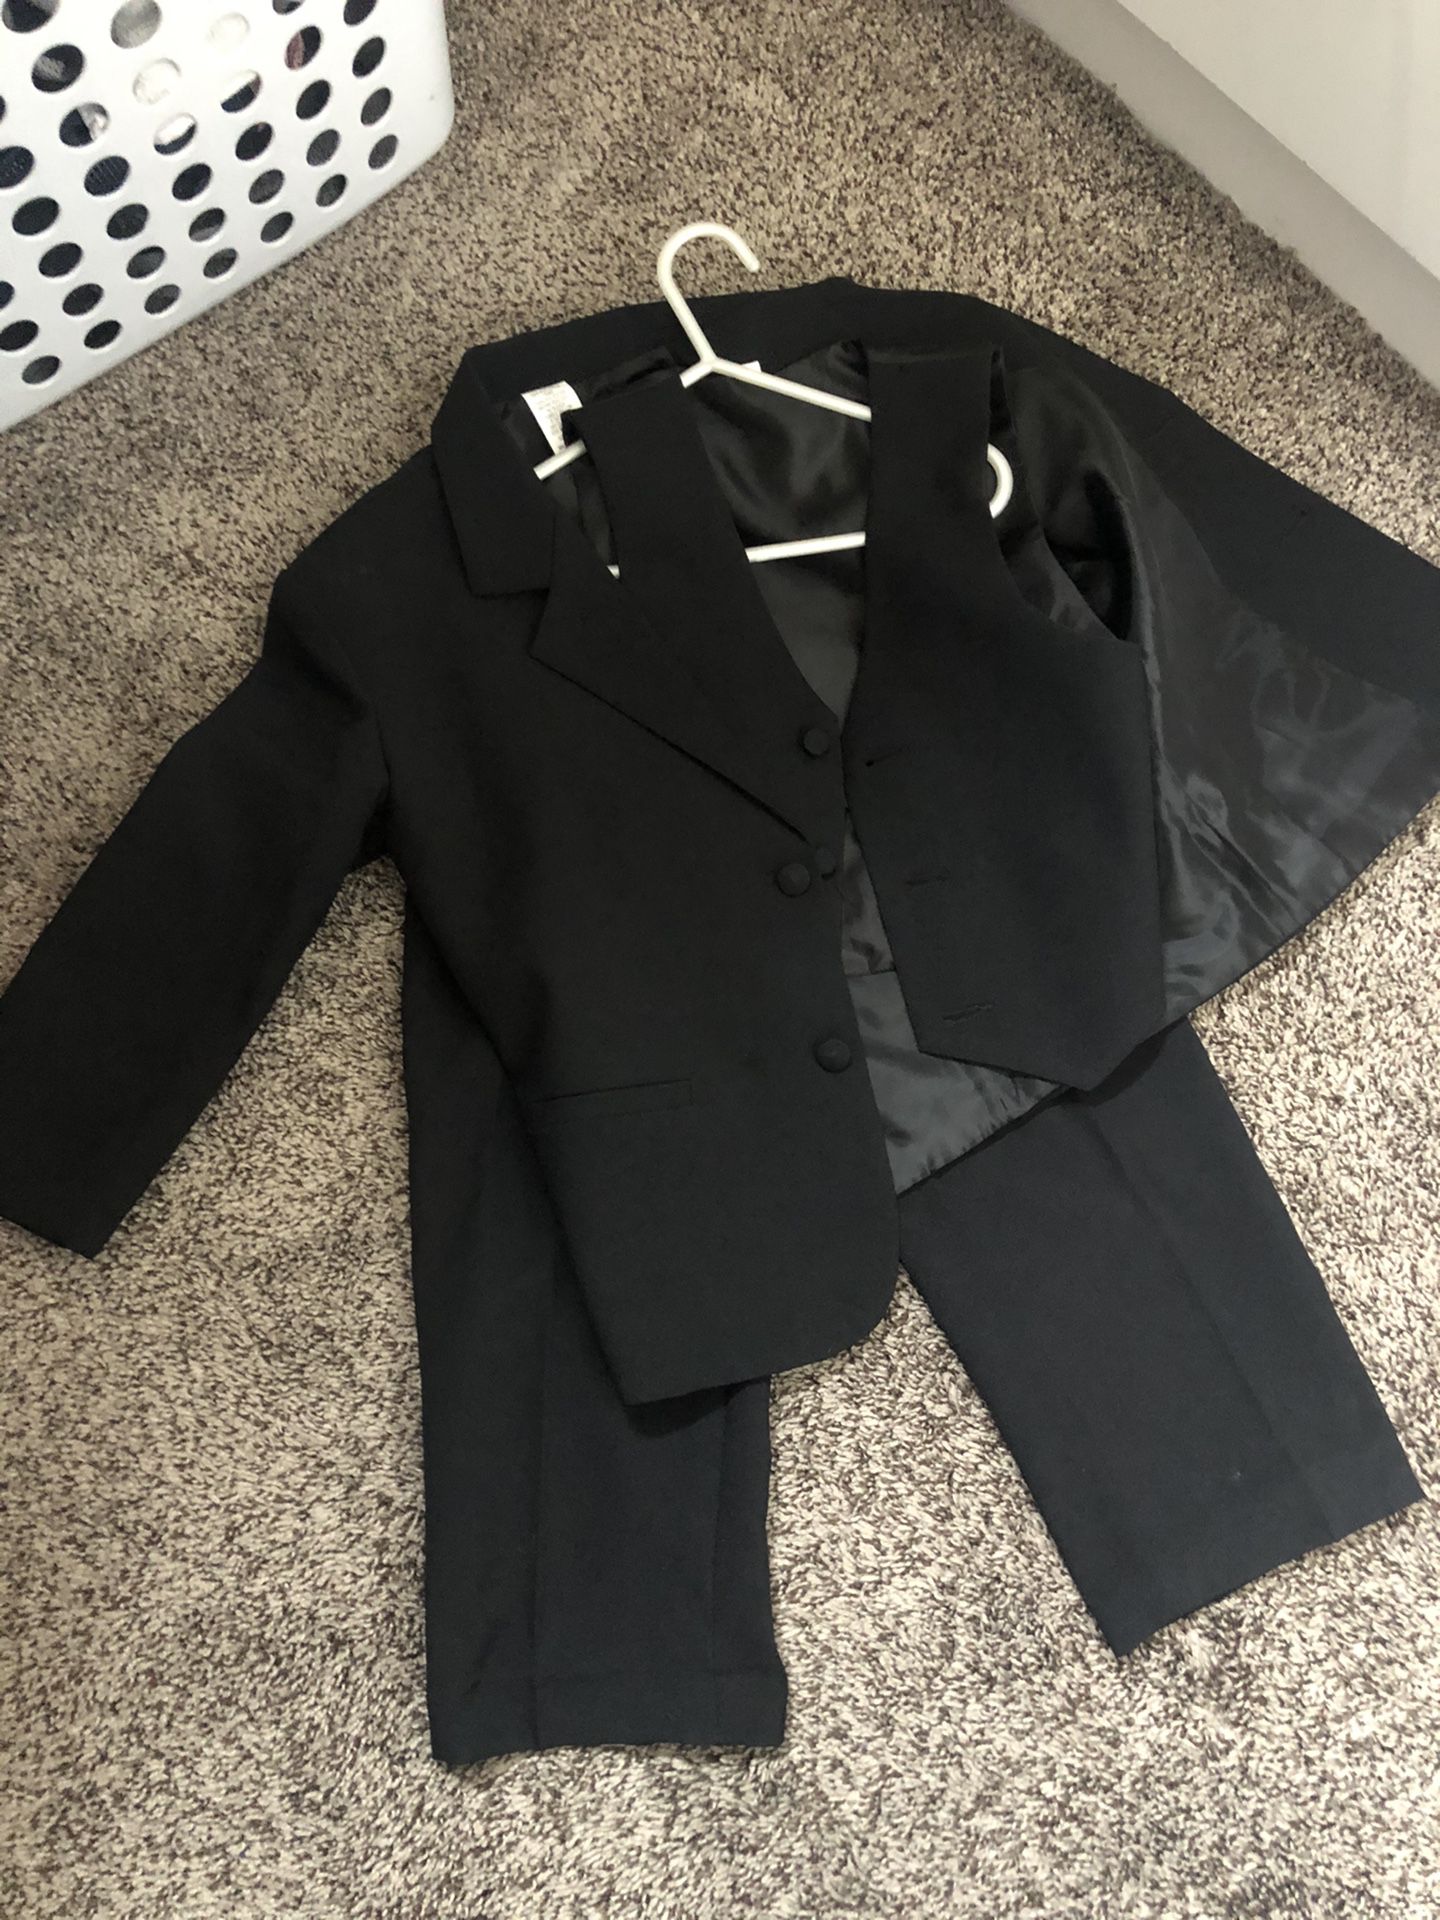 7 Pc Boys Black Tux/suit and Vest Size 5